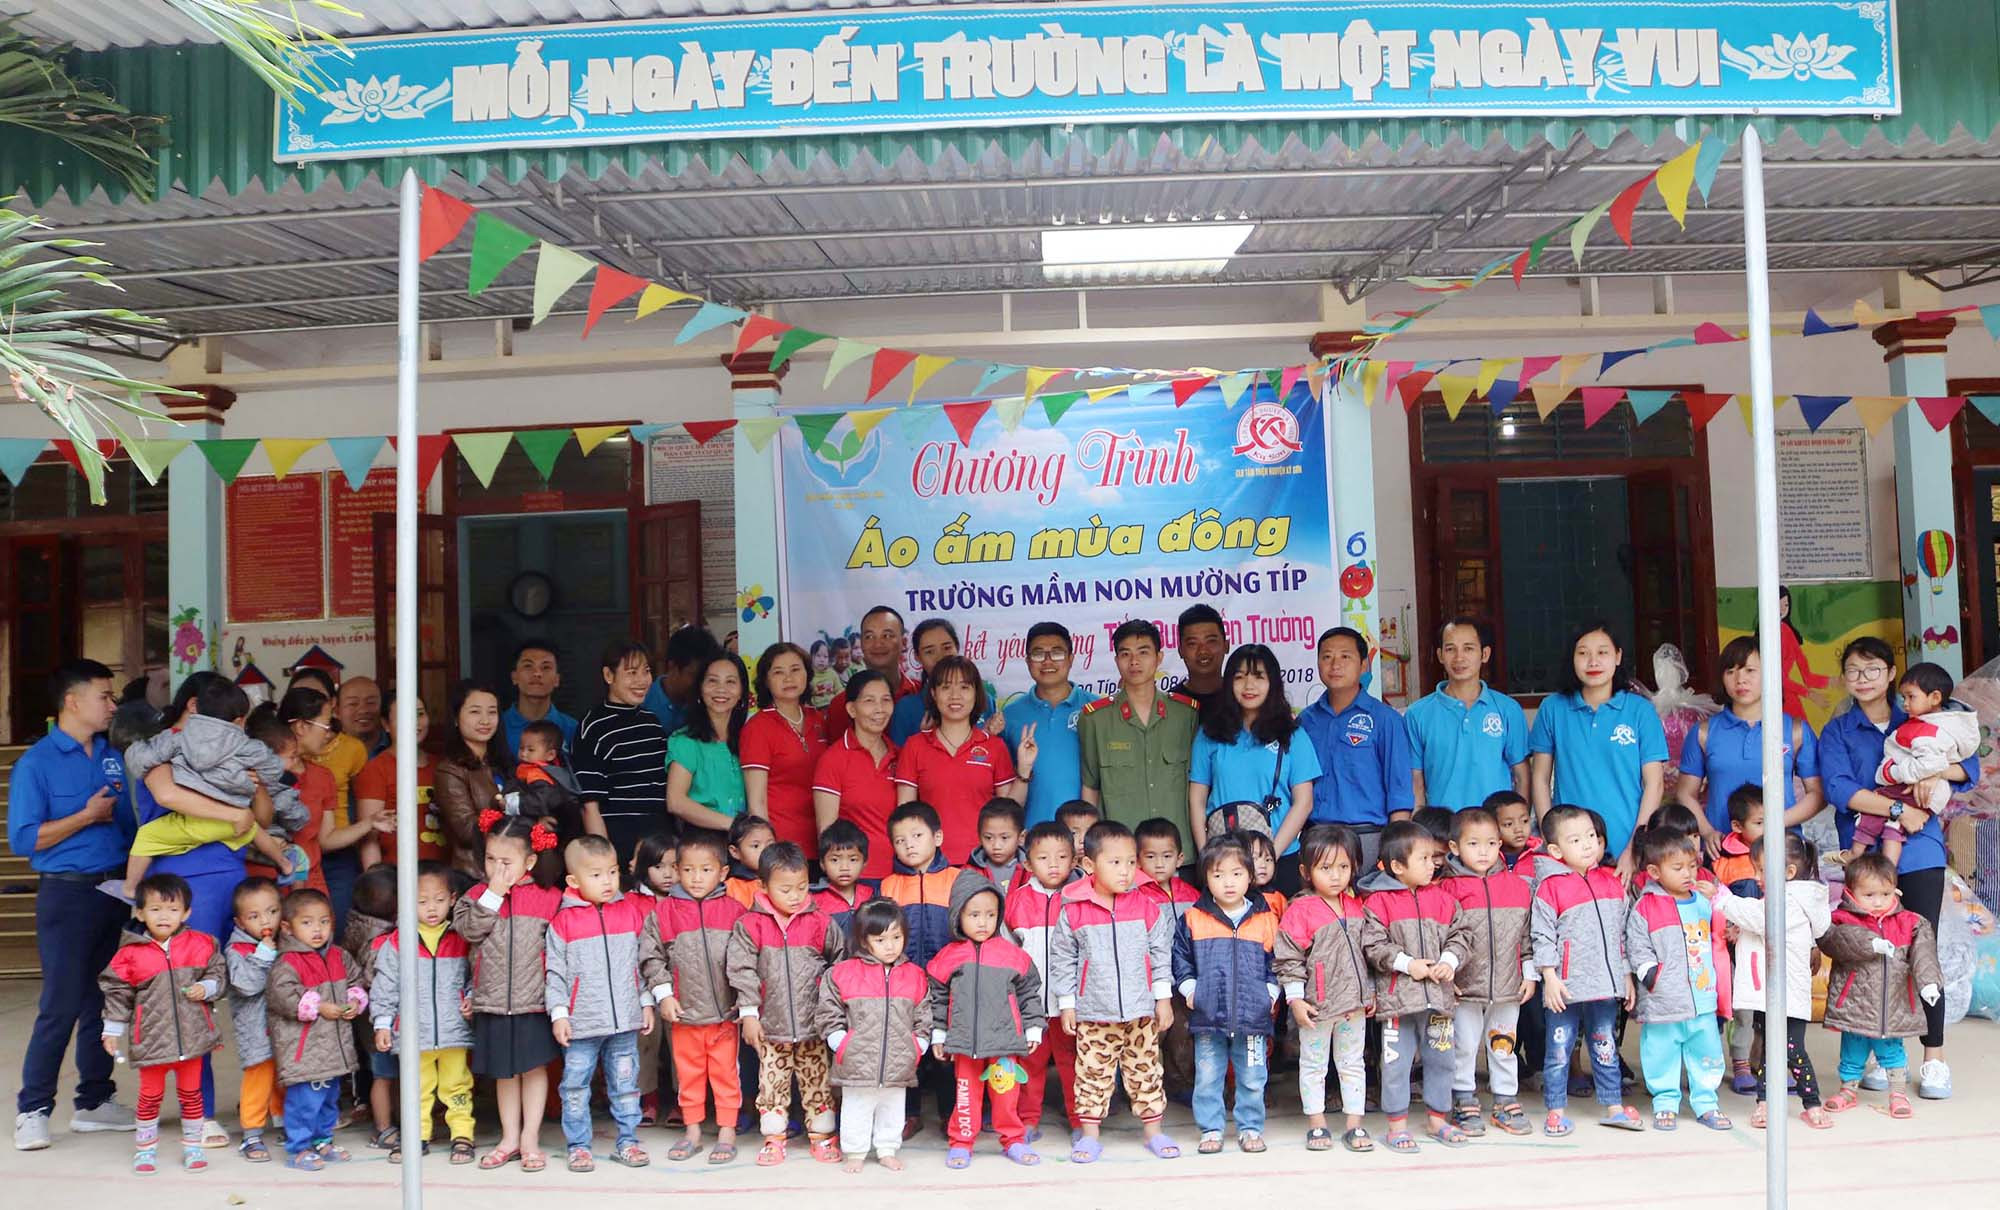 Trao tặng áo ấm cho học sinh Trường Mầm non Mường Típ (Kỳ Sơn). Ảnh: Lữ Phú